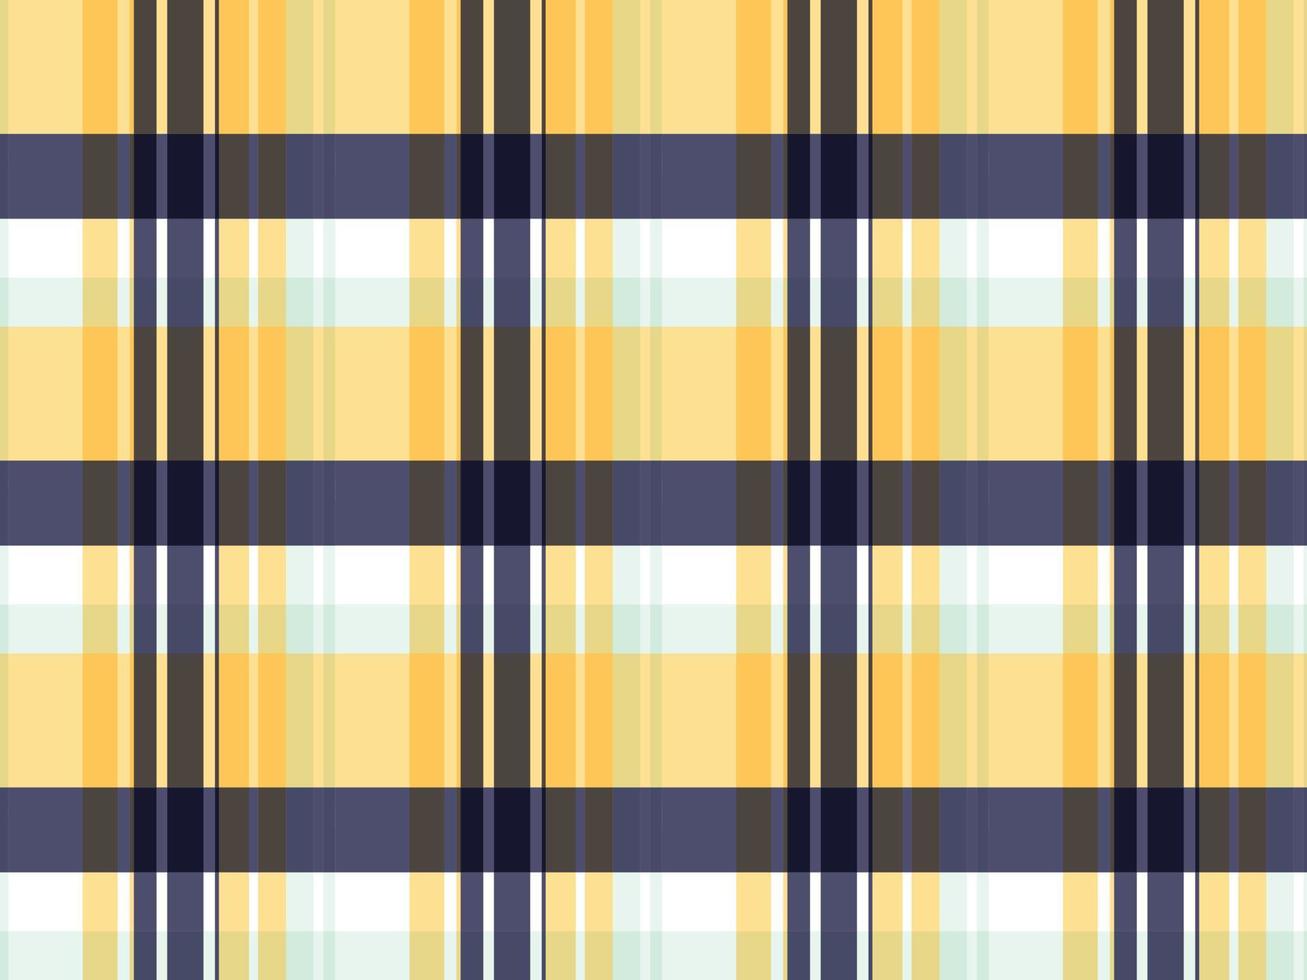 madras check classic style scotland testurizzato color pastello un motivo a righe dai colori accesi di diverso spessore che si incrociano per creare quadri irregolari. tipicamente usato sulle camicie. vettore